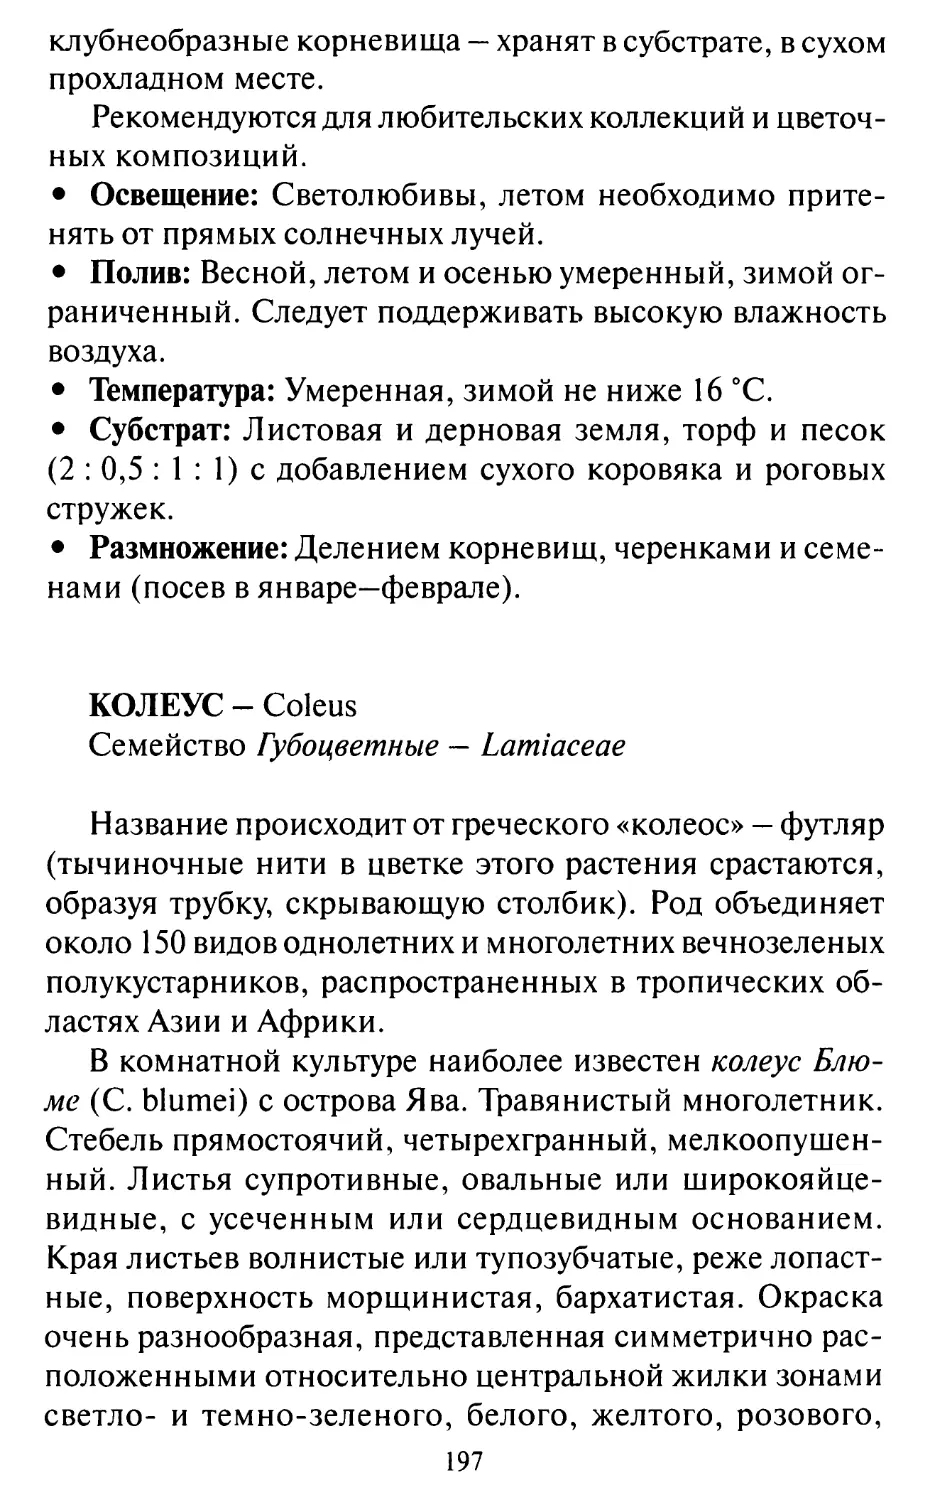 Колeyс - Coleus